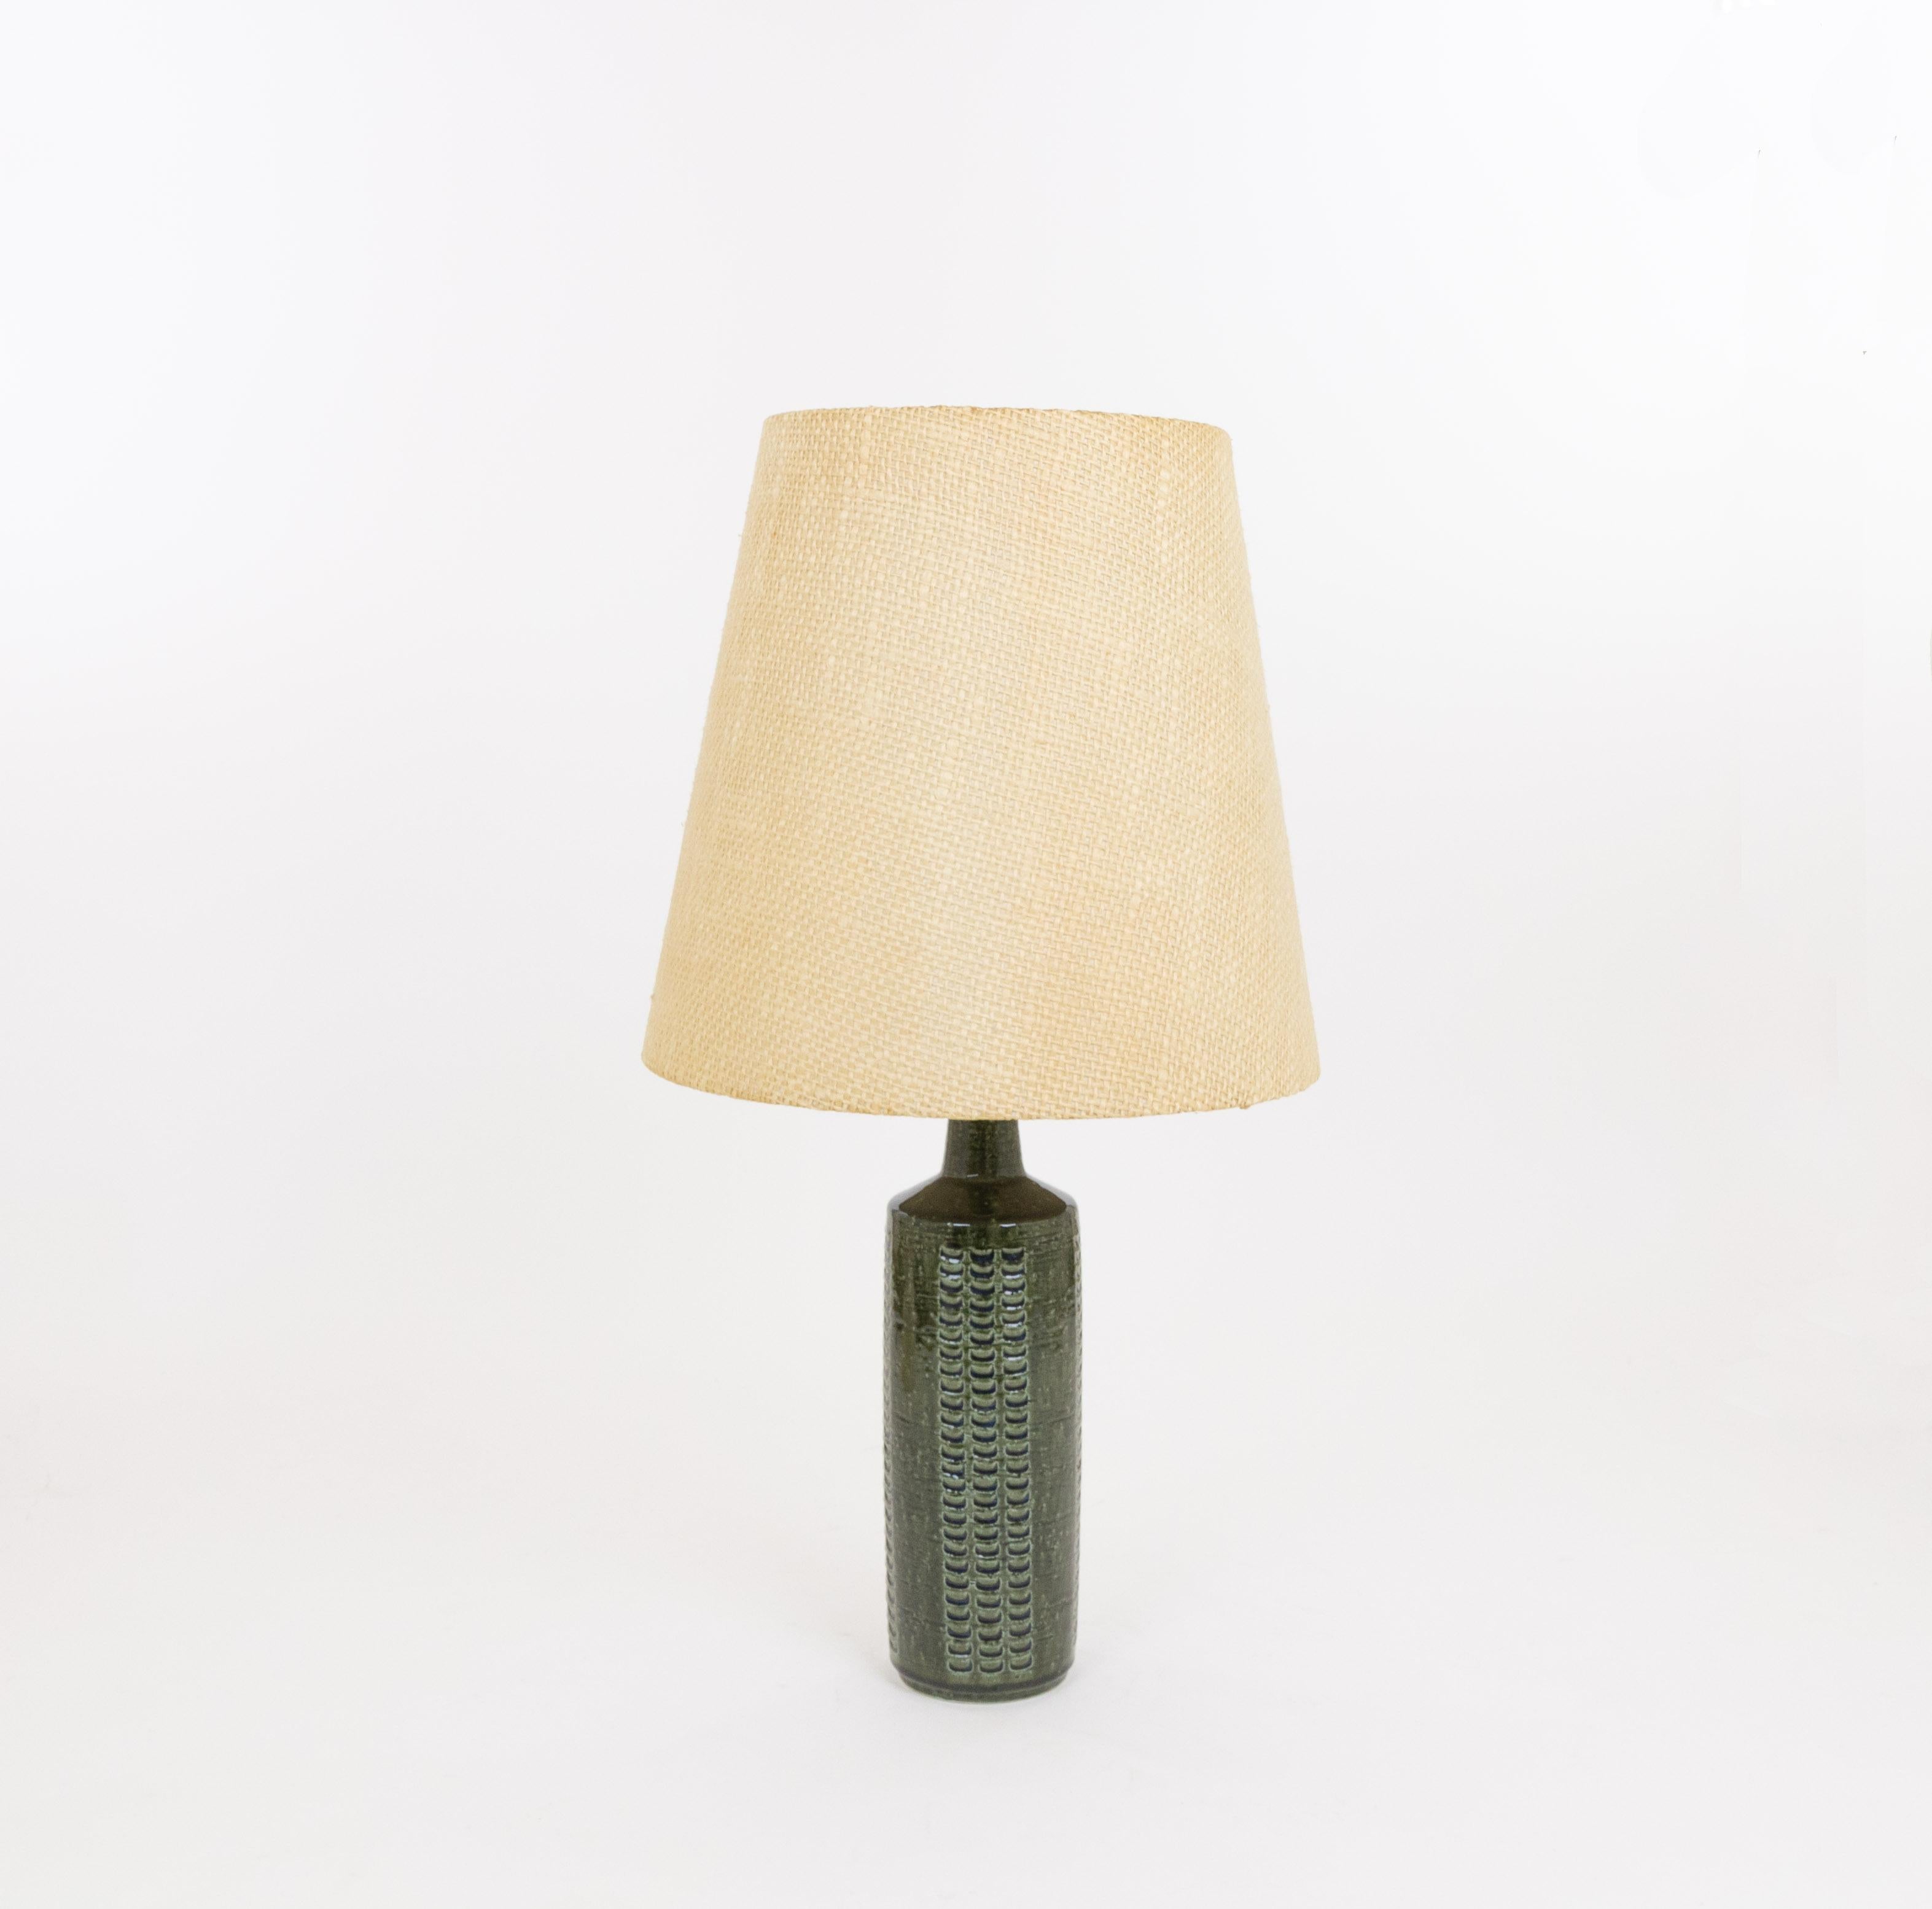 Lampe de table modèle DL/27 réalisée par Annelise et Per Linnemann-Schmidt pour Palshus dans les années 1960. La couleur de la base décorée à la main est vert bouteille, avec des traces de bleu nuit. Il présente des motifs impressionnés.

La lampe